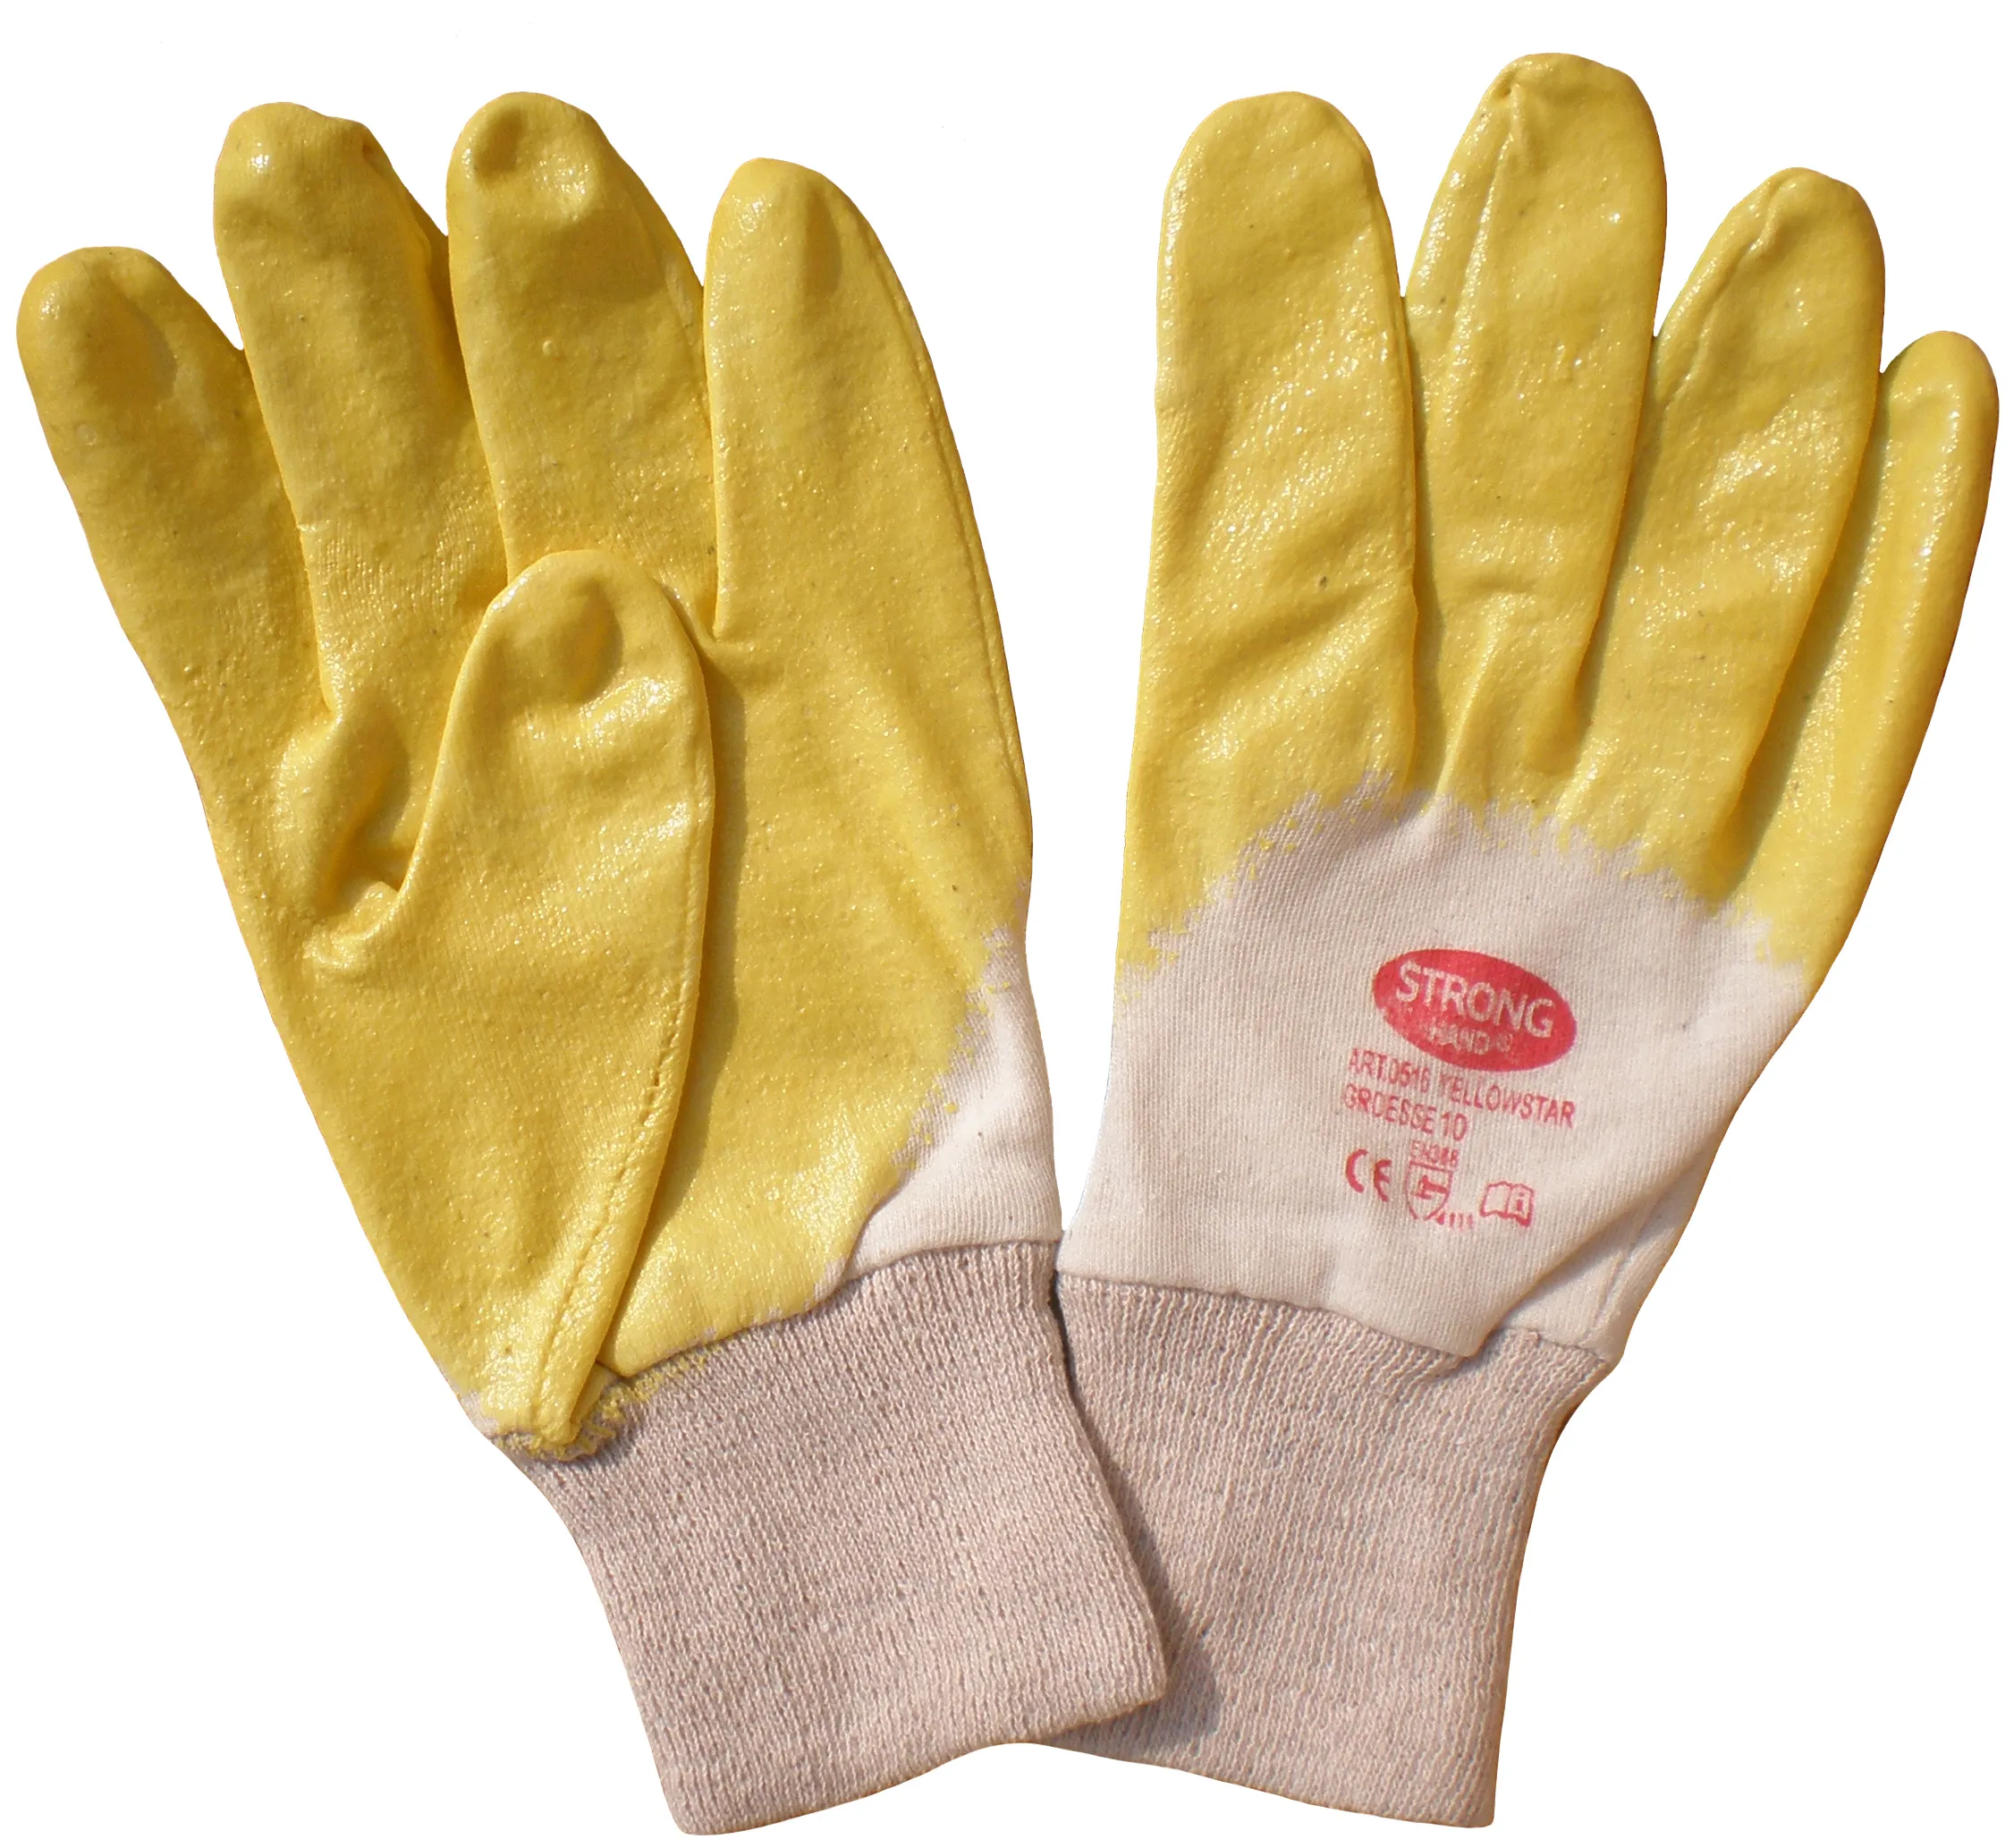 Enclavamiento de algodón forrado amarillo nitrilo 3/4 recubierto de venta al por mayor guantes de trabajo hecho en china